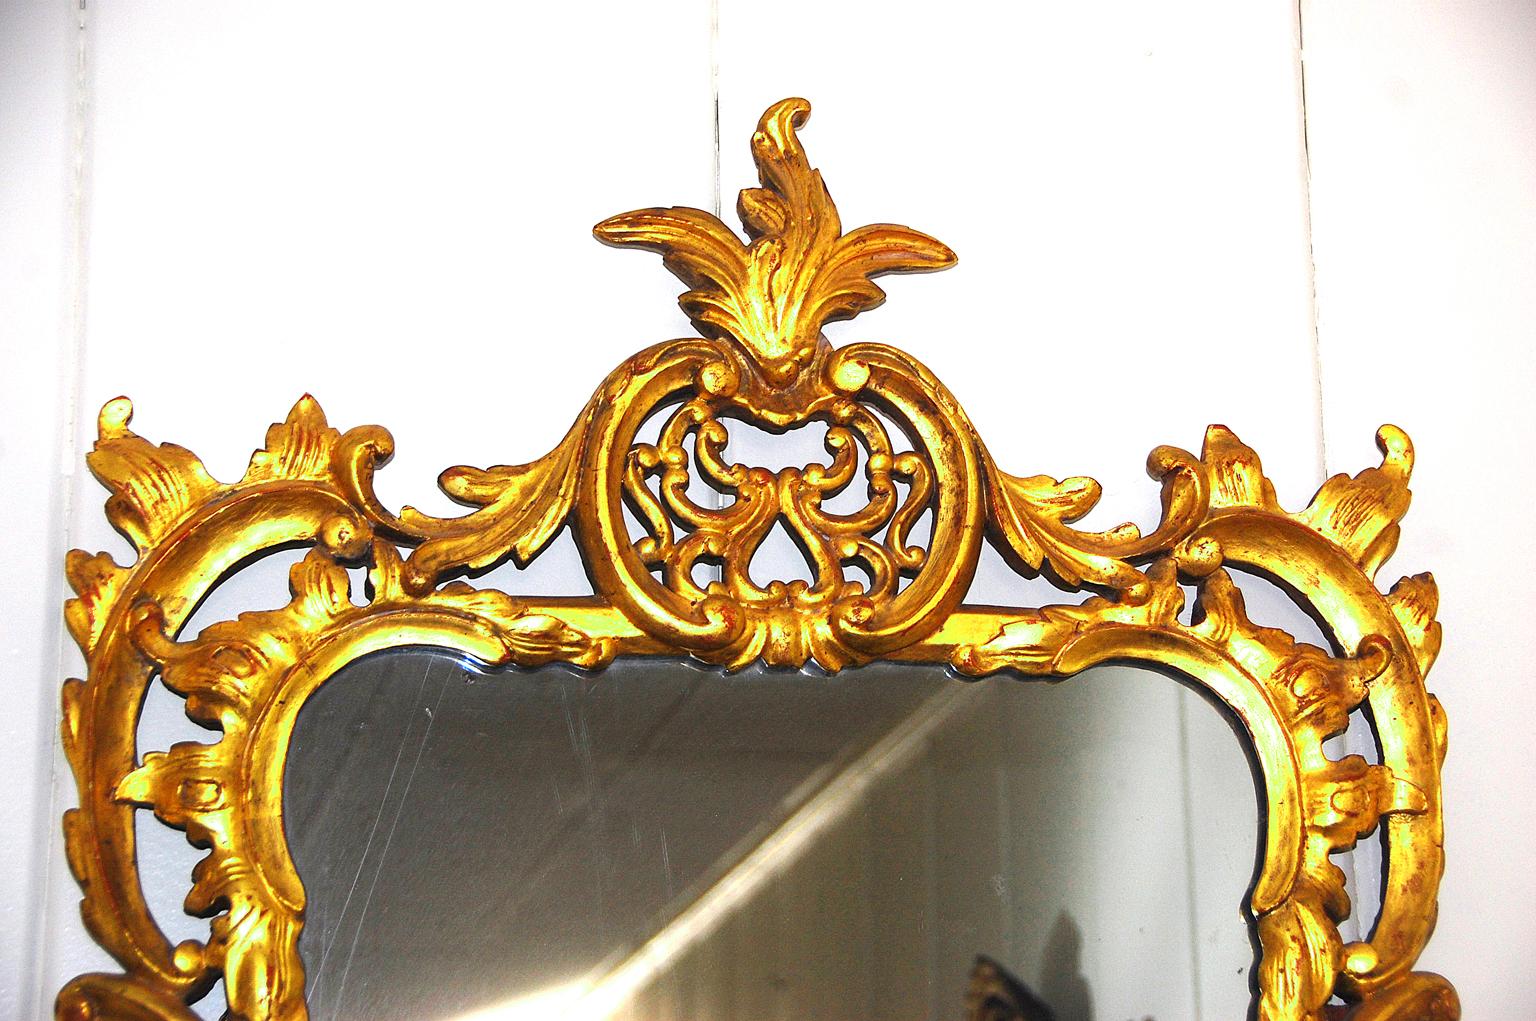 Englischer Spiegel aus der Zeit Georgs III., mit Blattgold beschnitzt, mit Blattwerk- und Blumenmotiven, eleganten Durchbrüchen und Fließen um den Spiegel herum, von einem Meisterschnitzer gefertigt, um 1790.